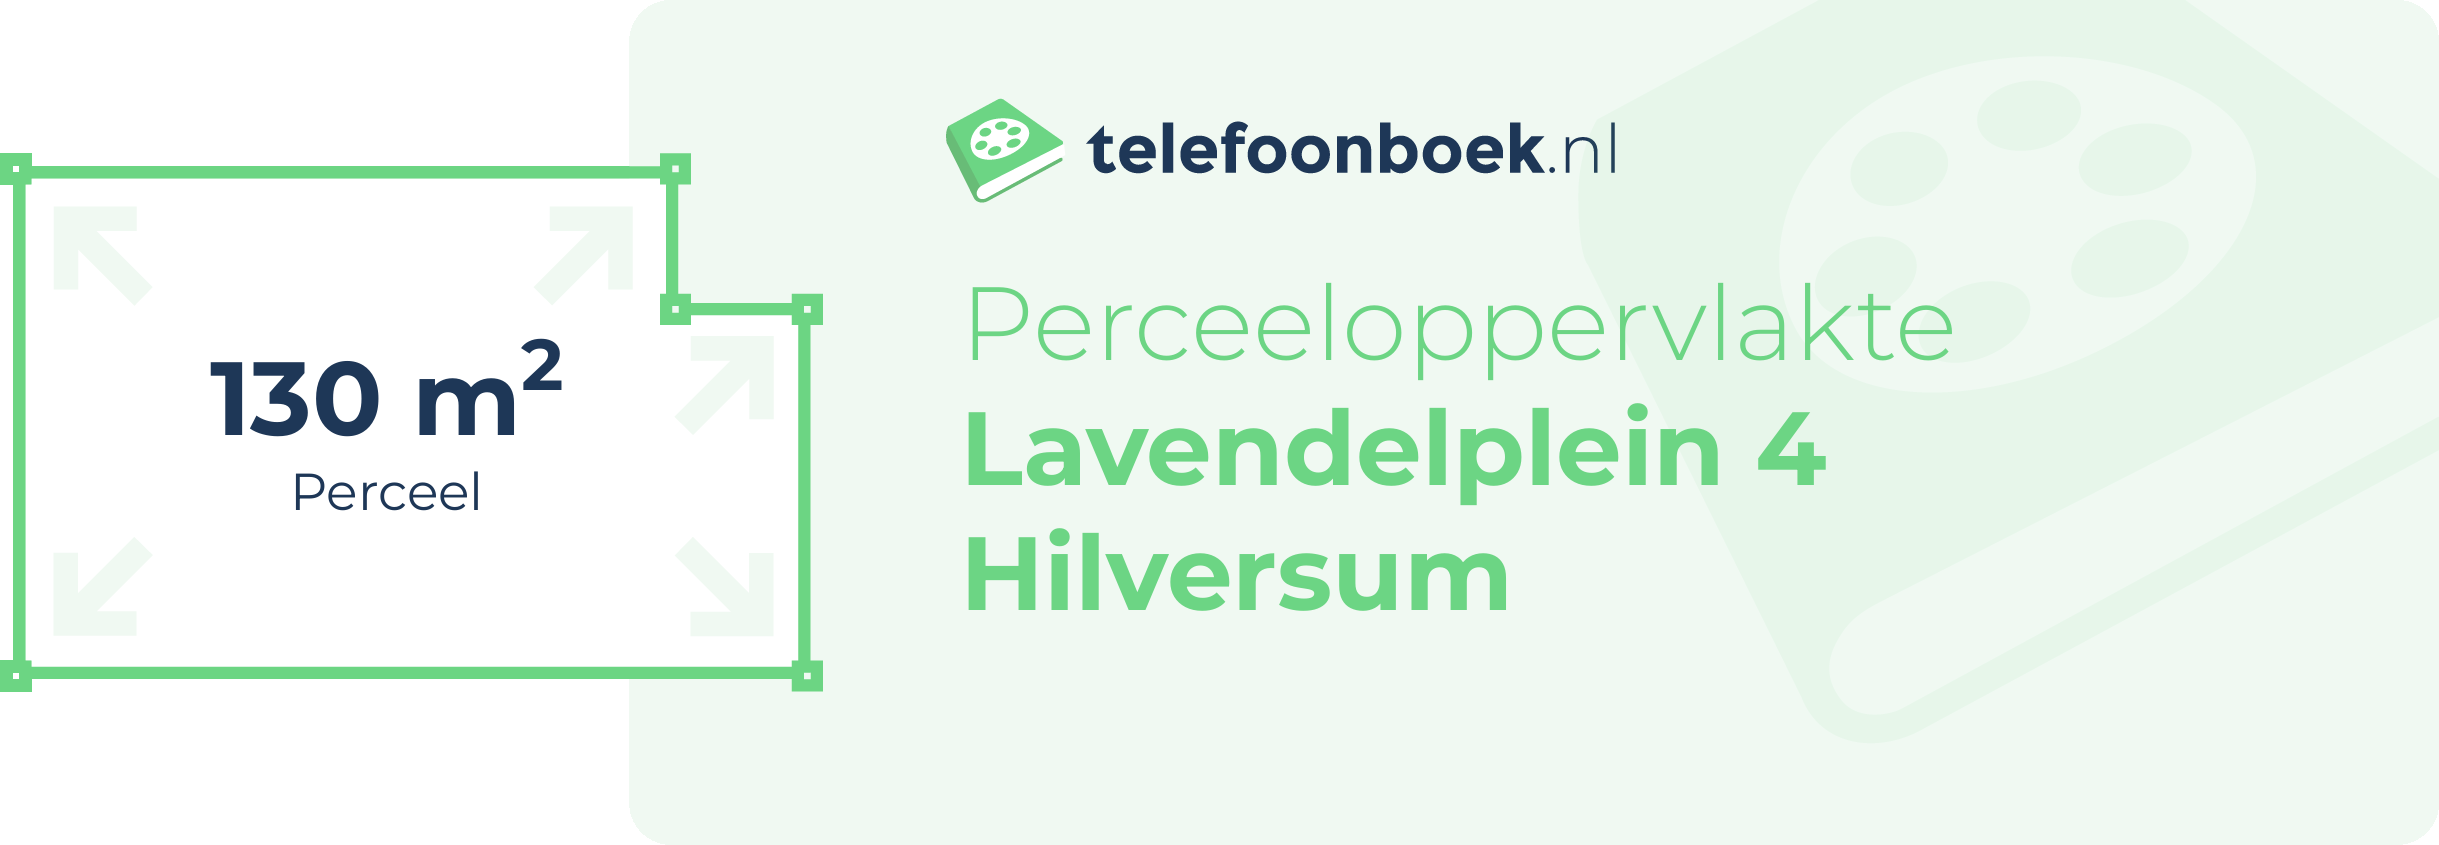 Perceeloppervlakte Lavendelplein 4 Hilversum